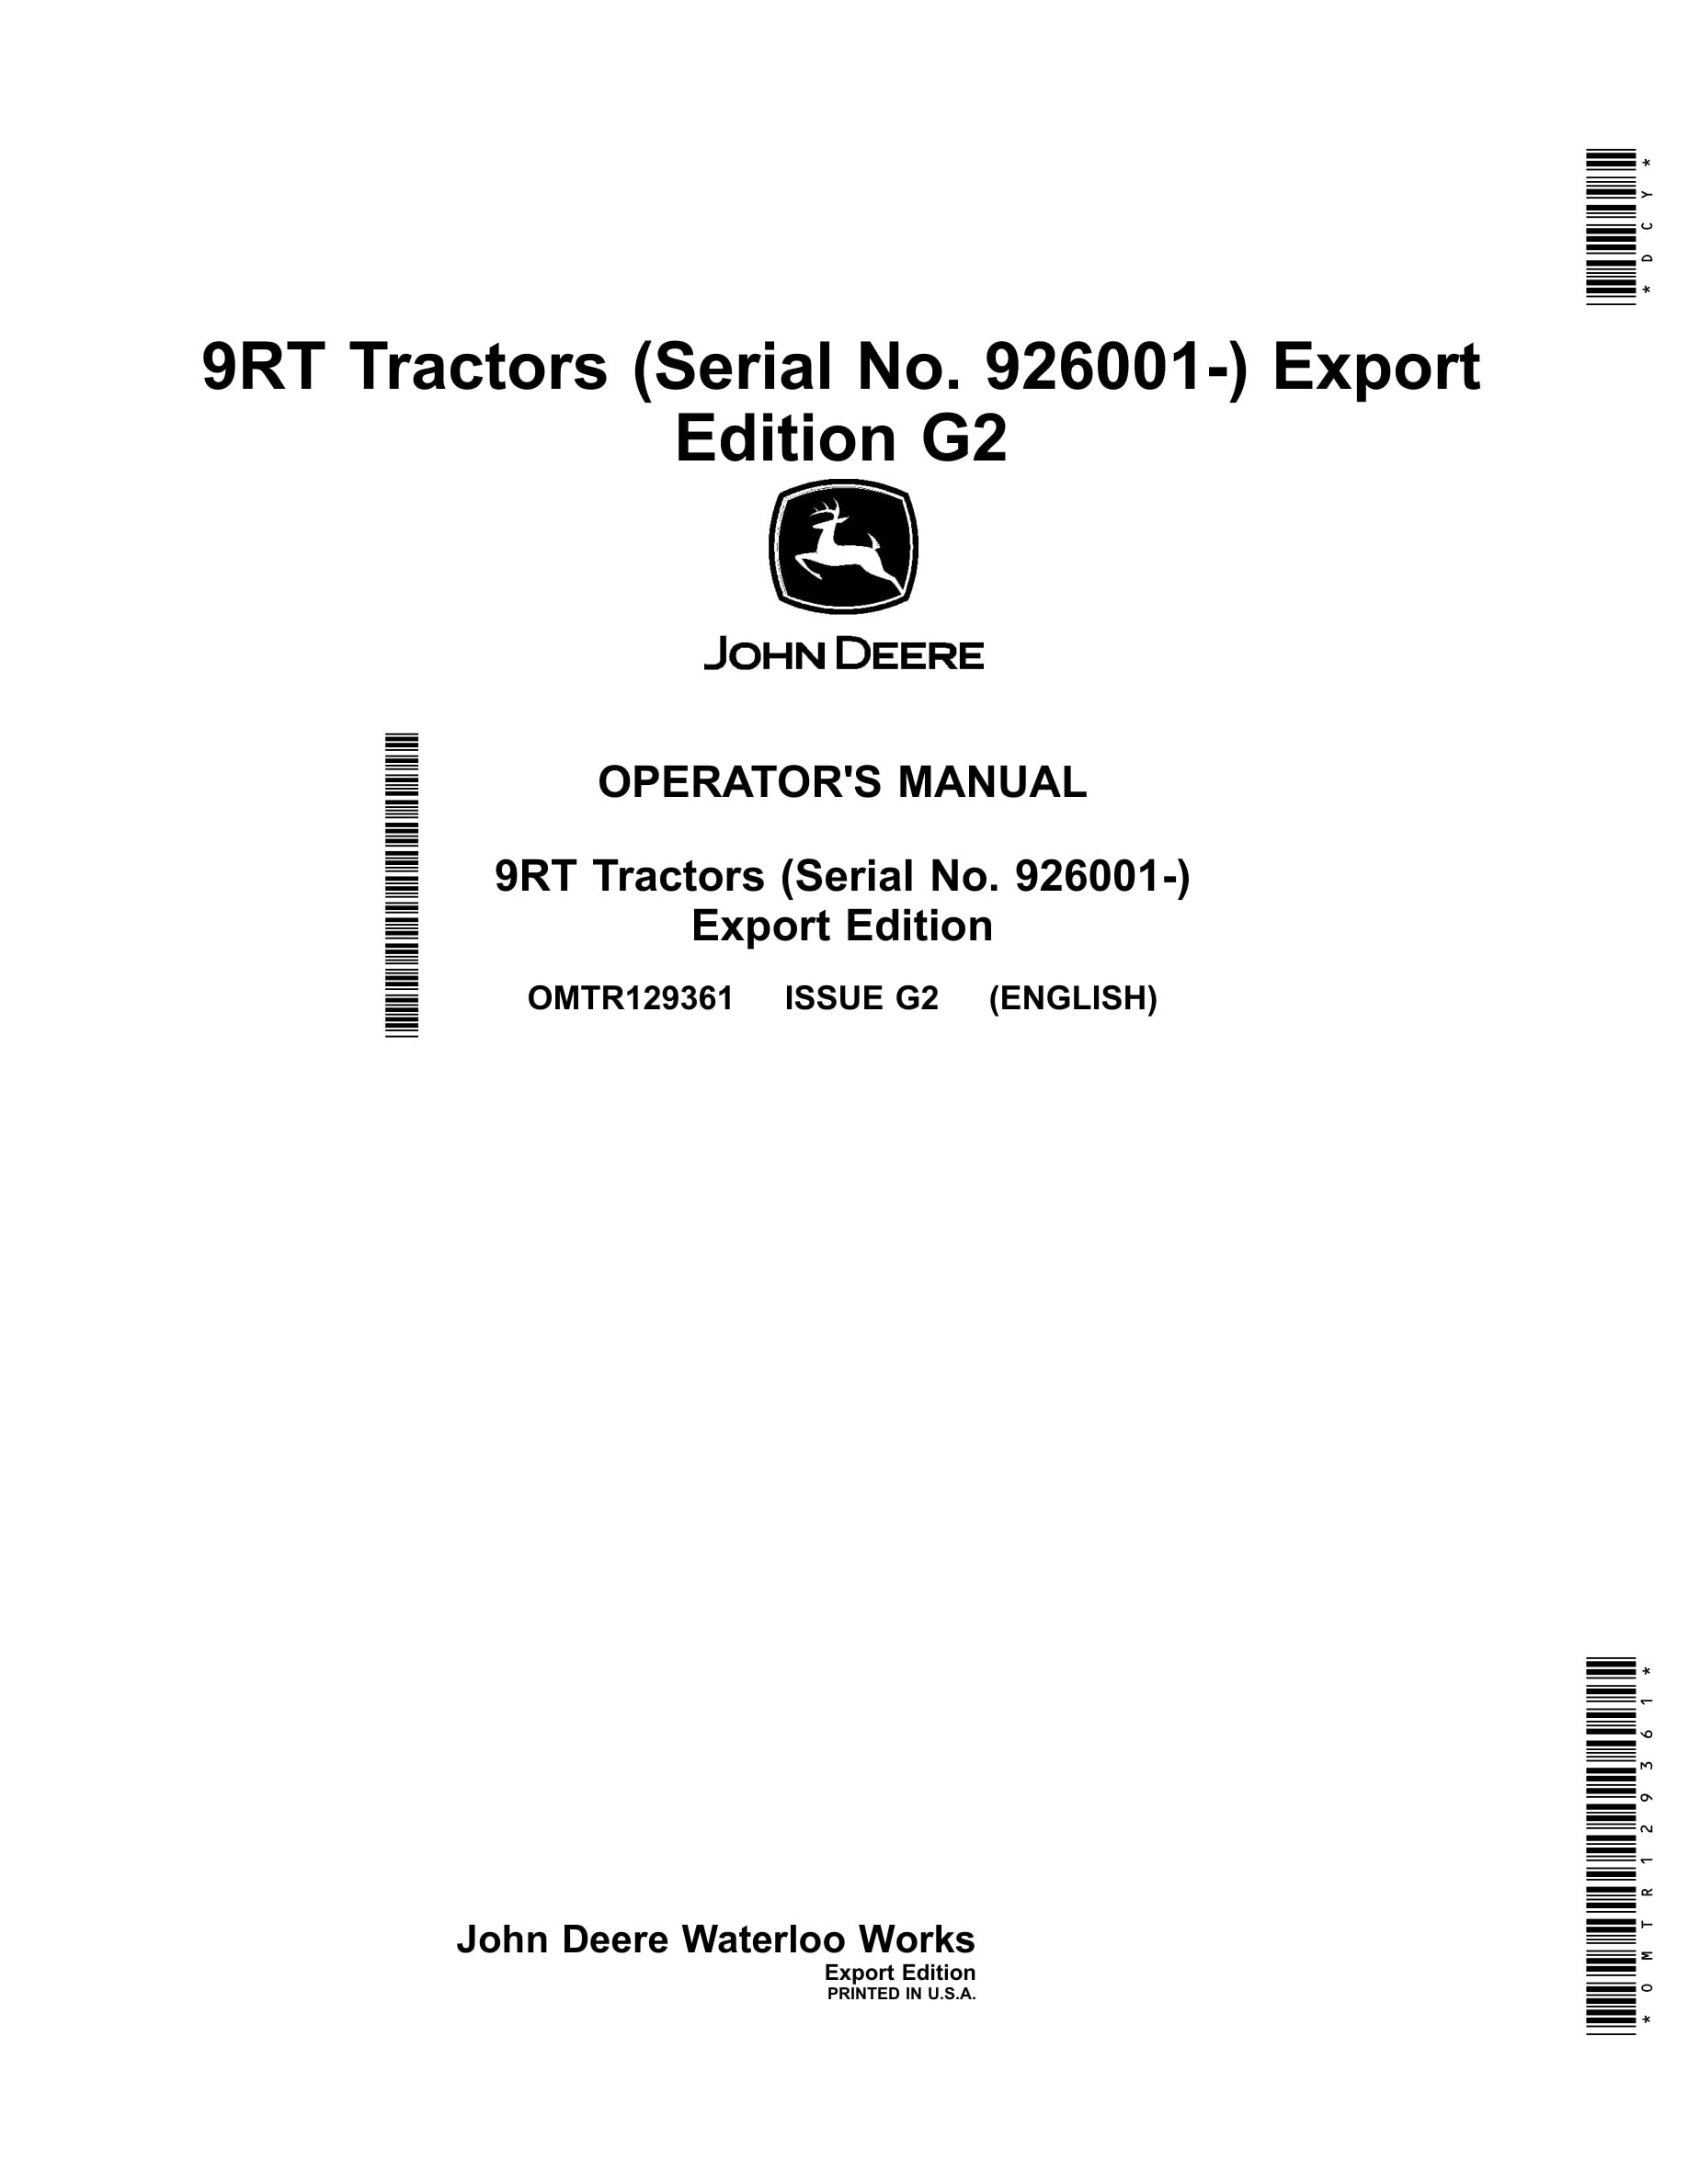 John Deere 9rt Tractors Operator Manuals OMTR129361-1